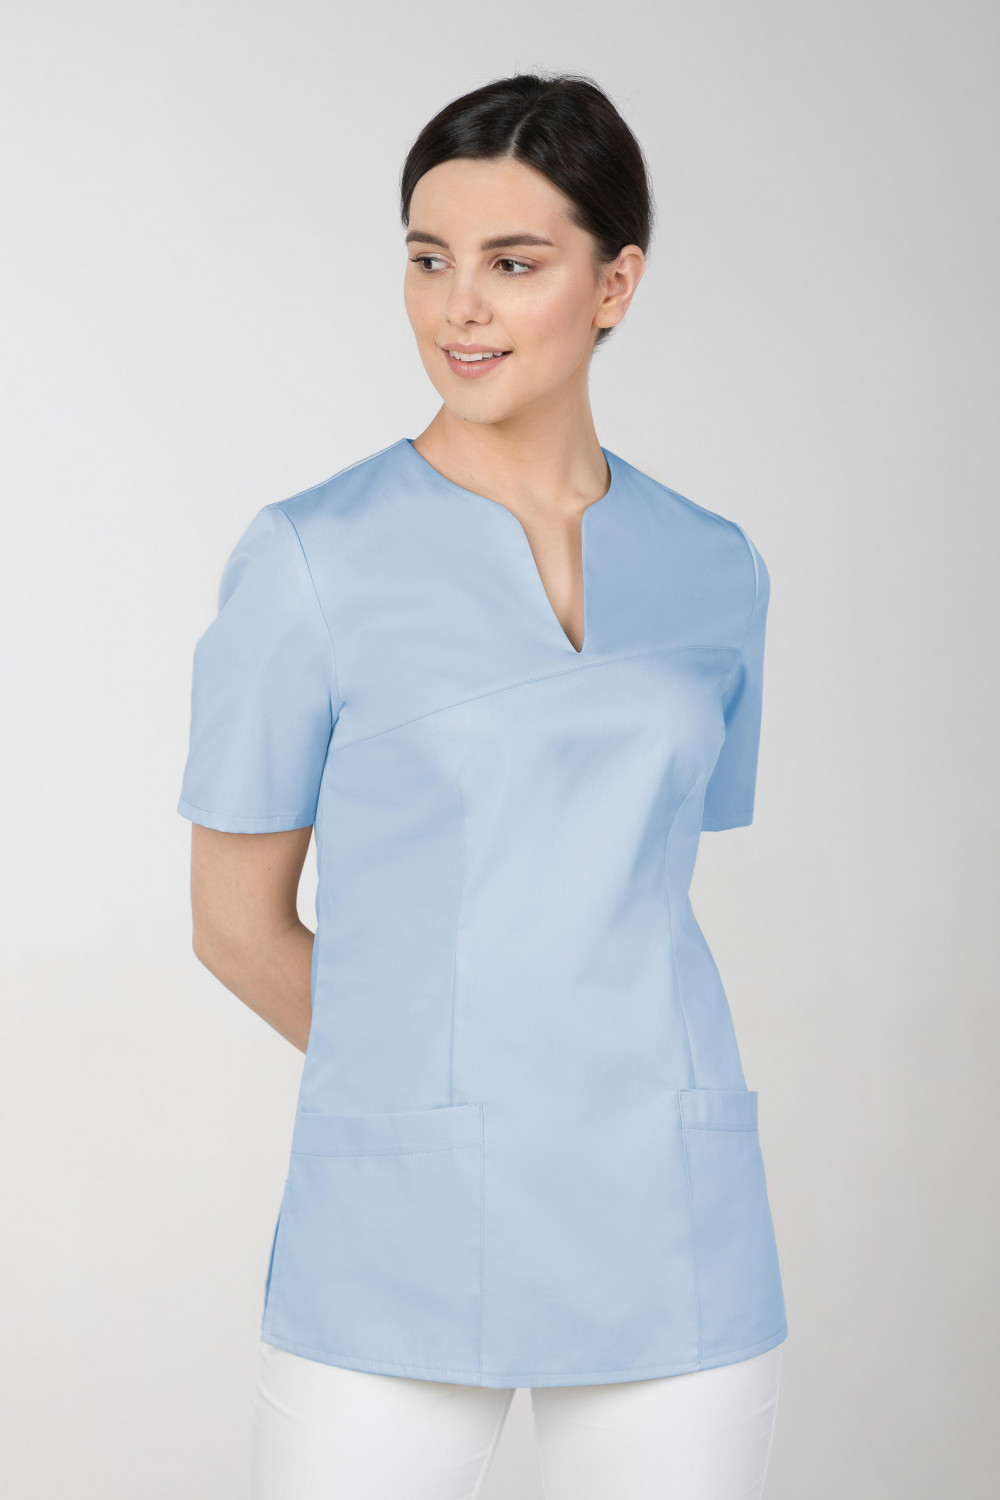 M-323 Bluza medyczna kosmetyczna damska fartuch kolor błękit